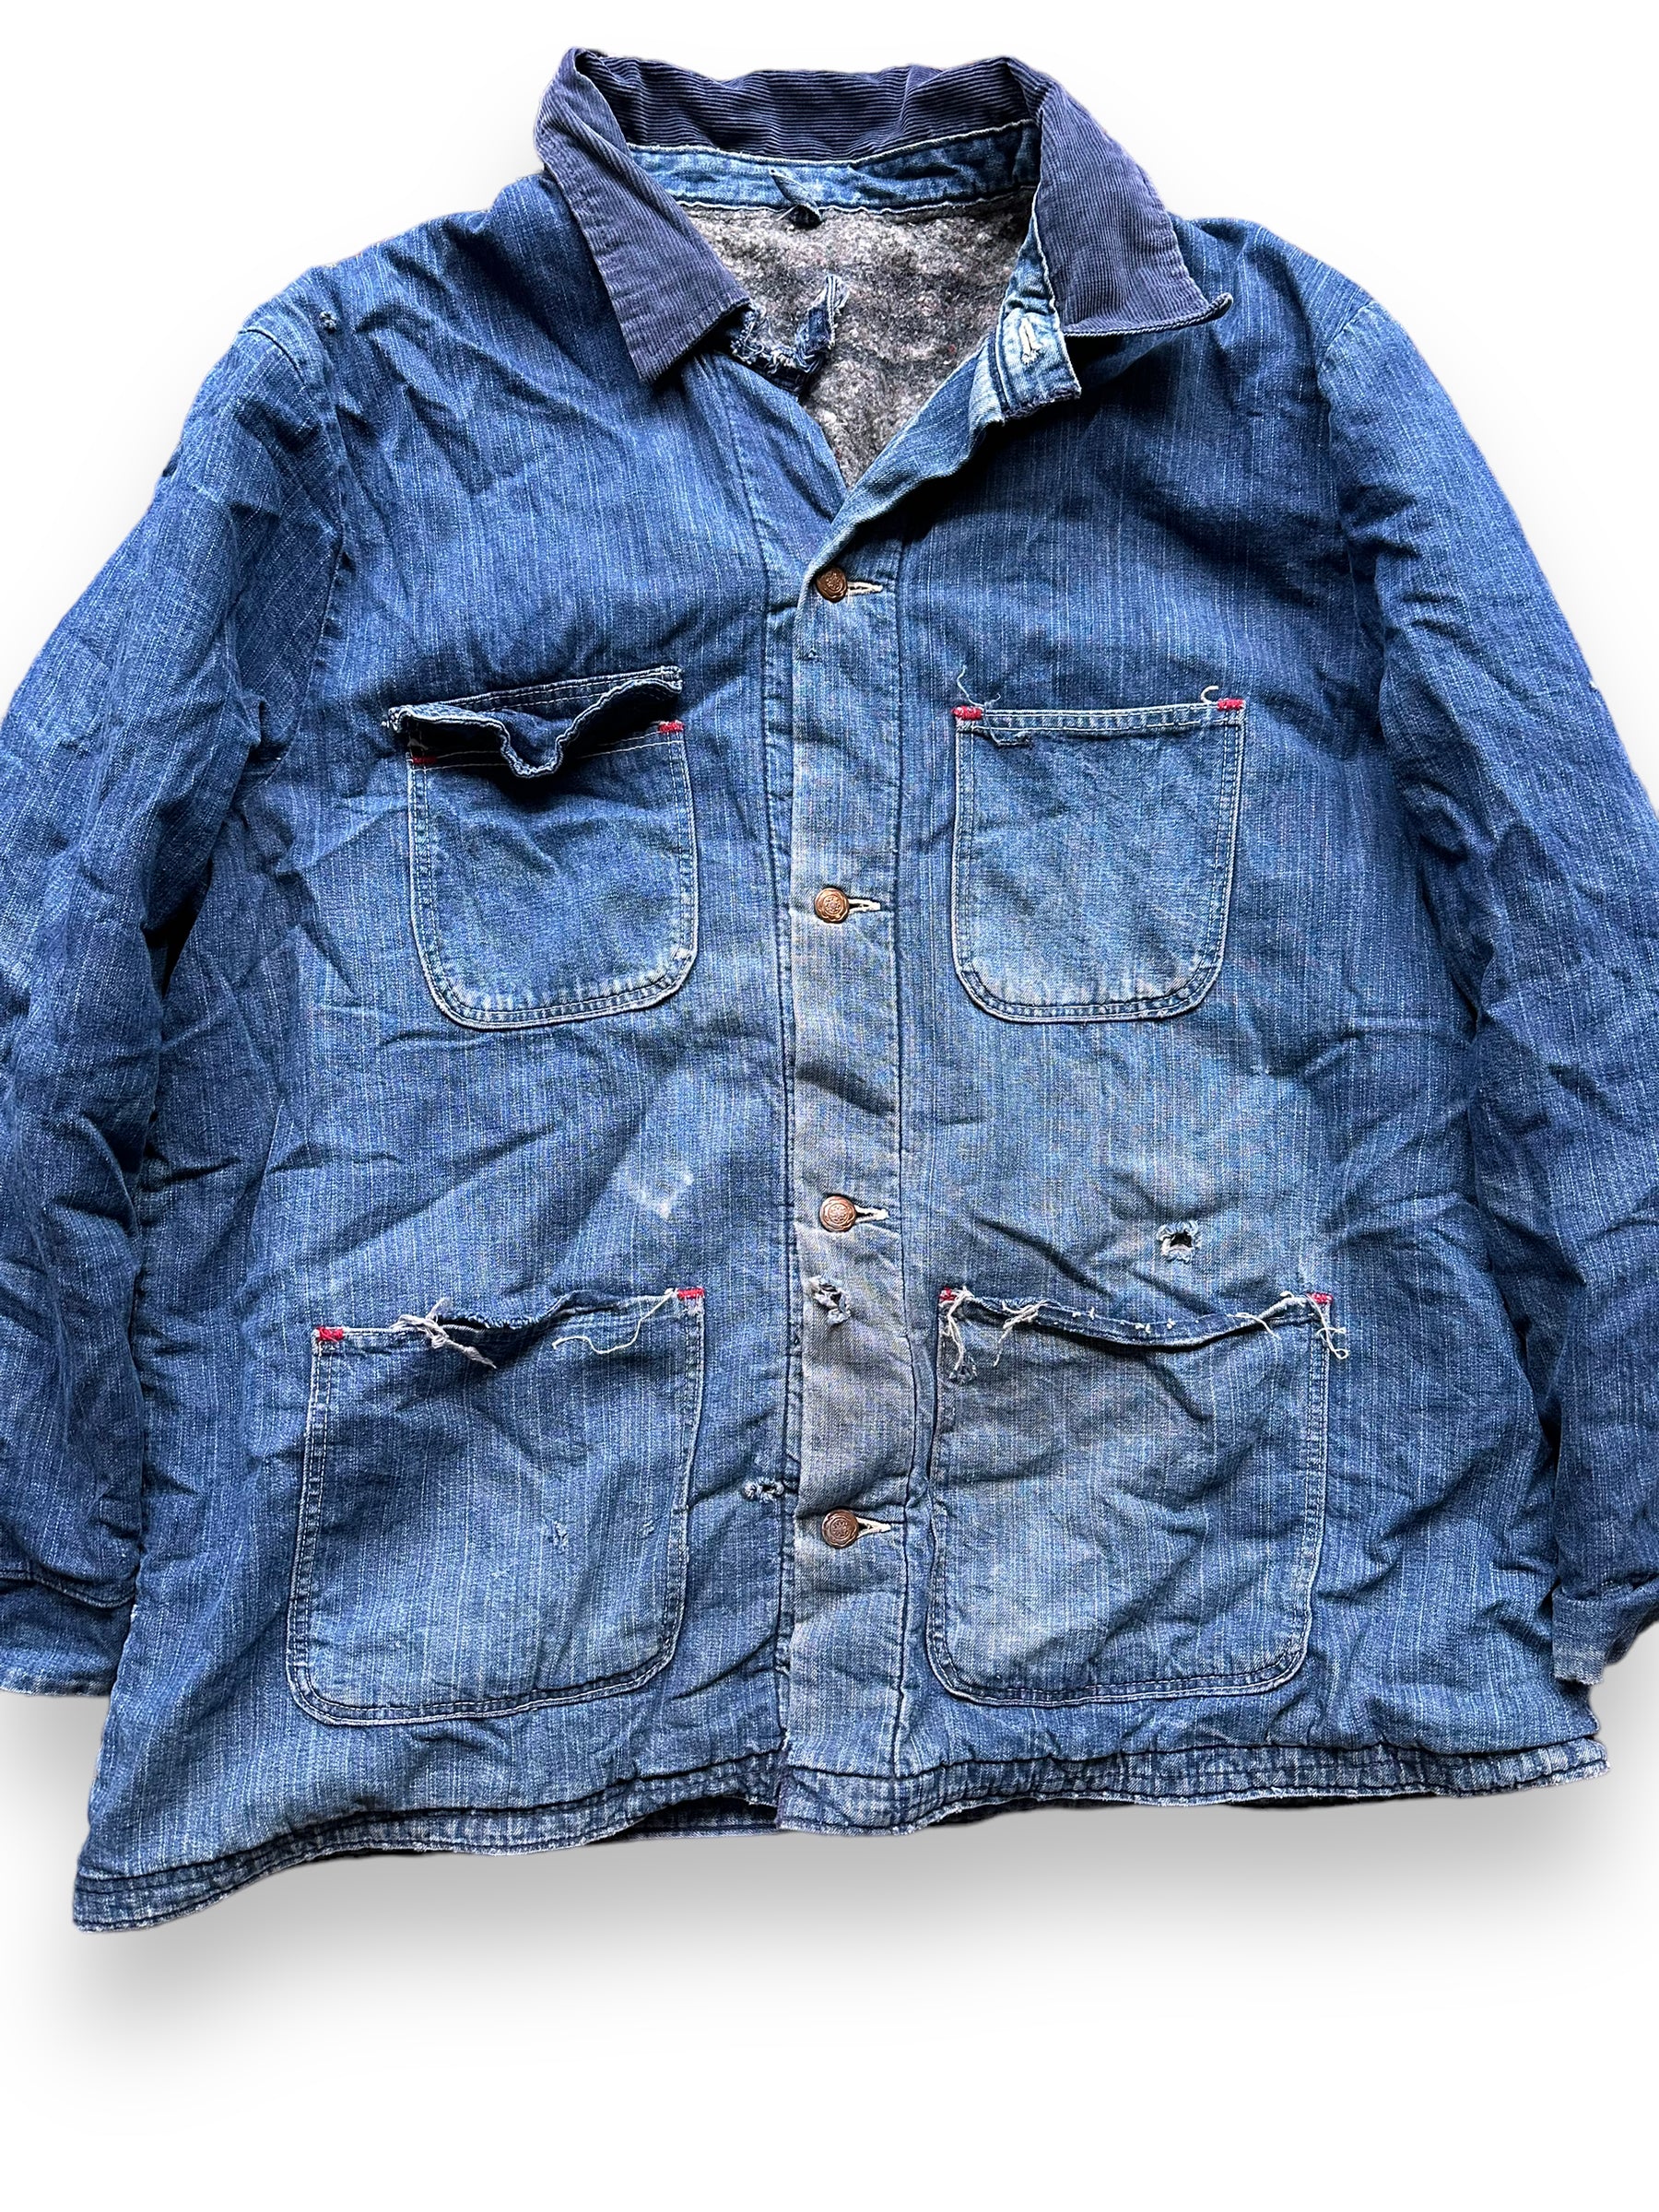 Front Detail on Vintage Blanket Lined Wrangler Blue Bell Chore Coat SZ 50 | Vintage Denim Jacket Seattle | Seattle Vintage Clothing